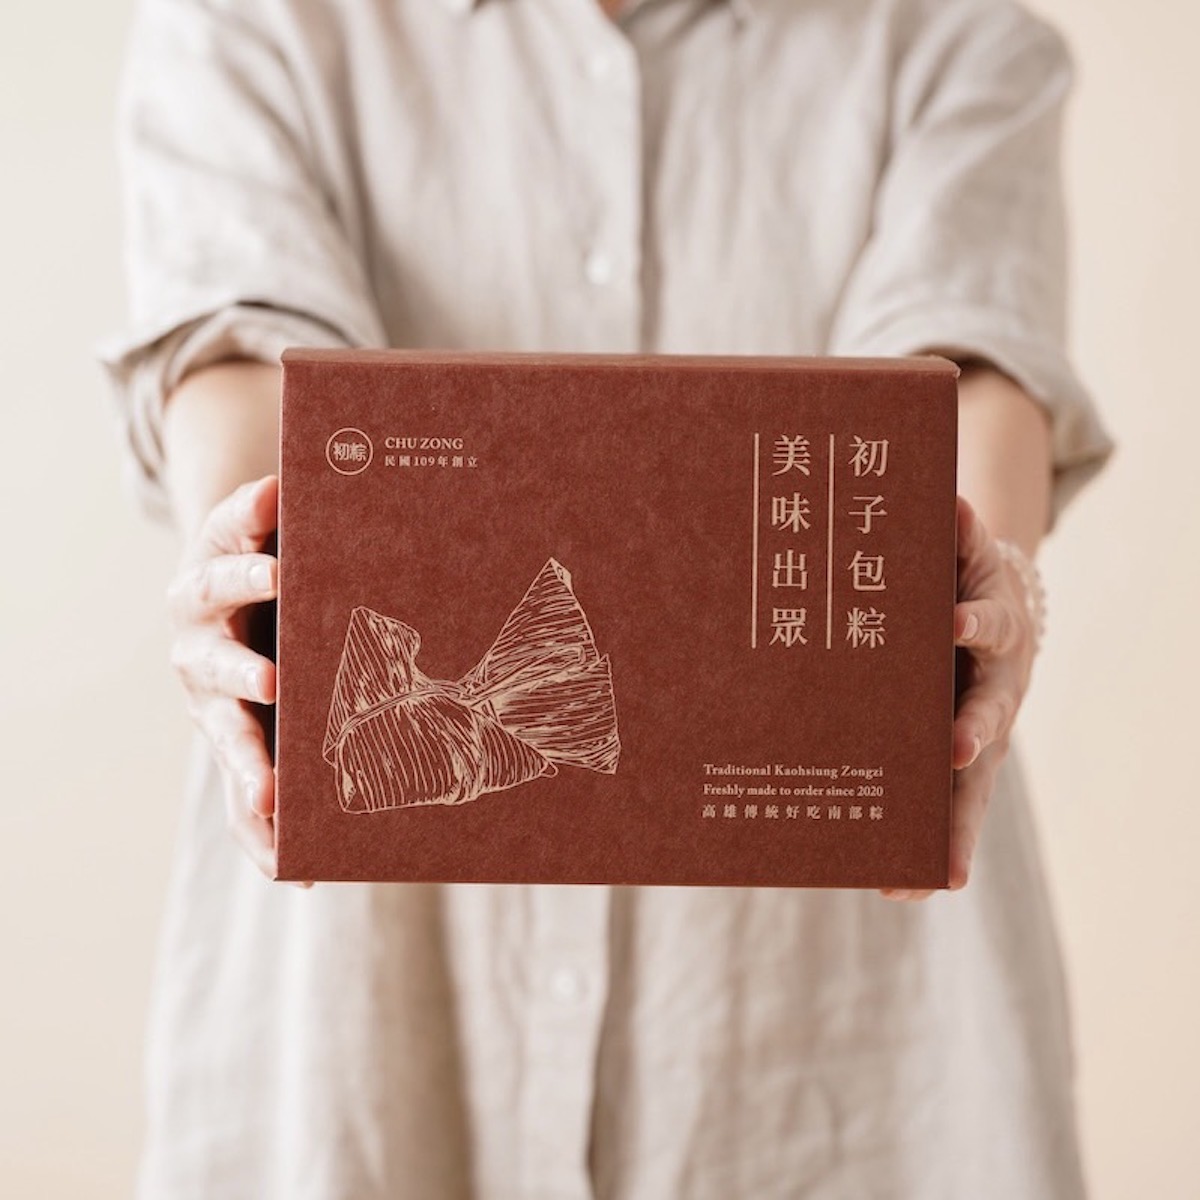 【初粽傳統粽舖】明星招牌禮盒10入組(麻辣鮮肉粽5顆+福氣滿滿粽5顆)